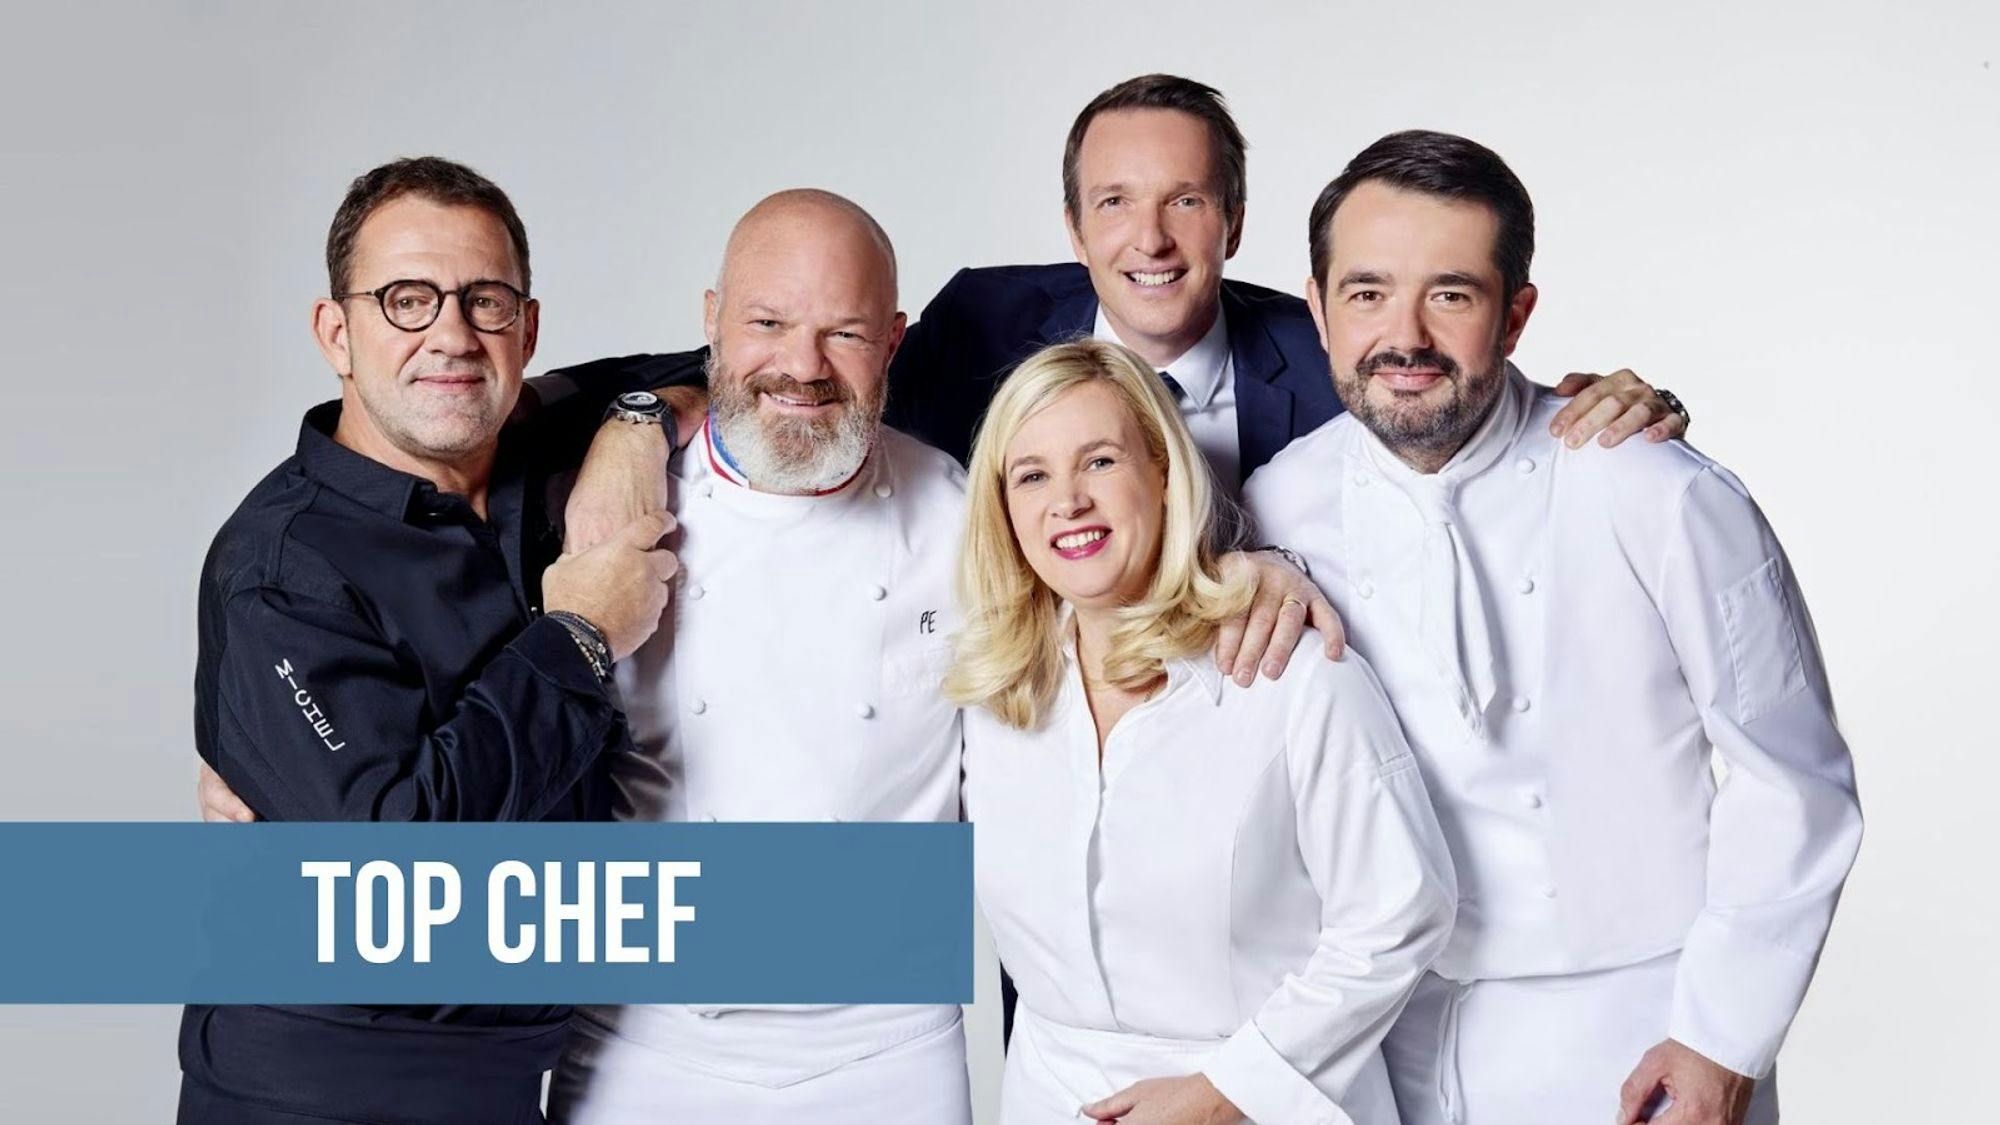 photo des membres du jury de Top Chef avec un titre sur fond bleu